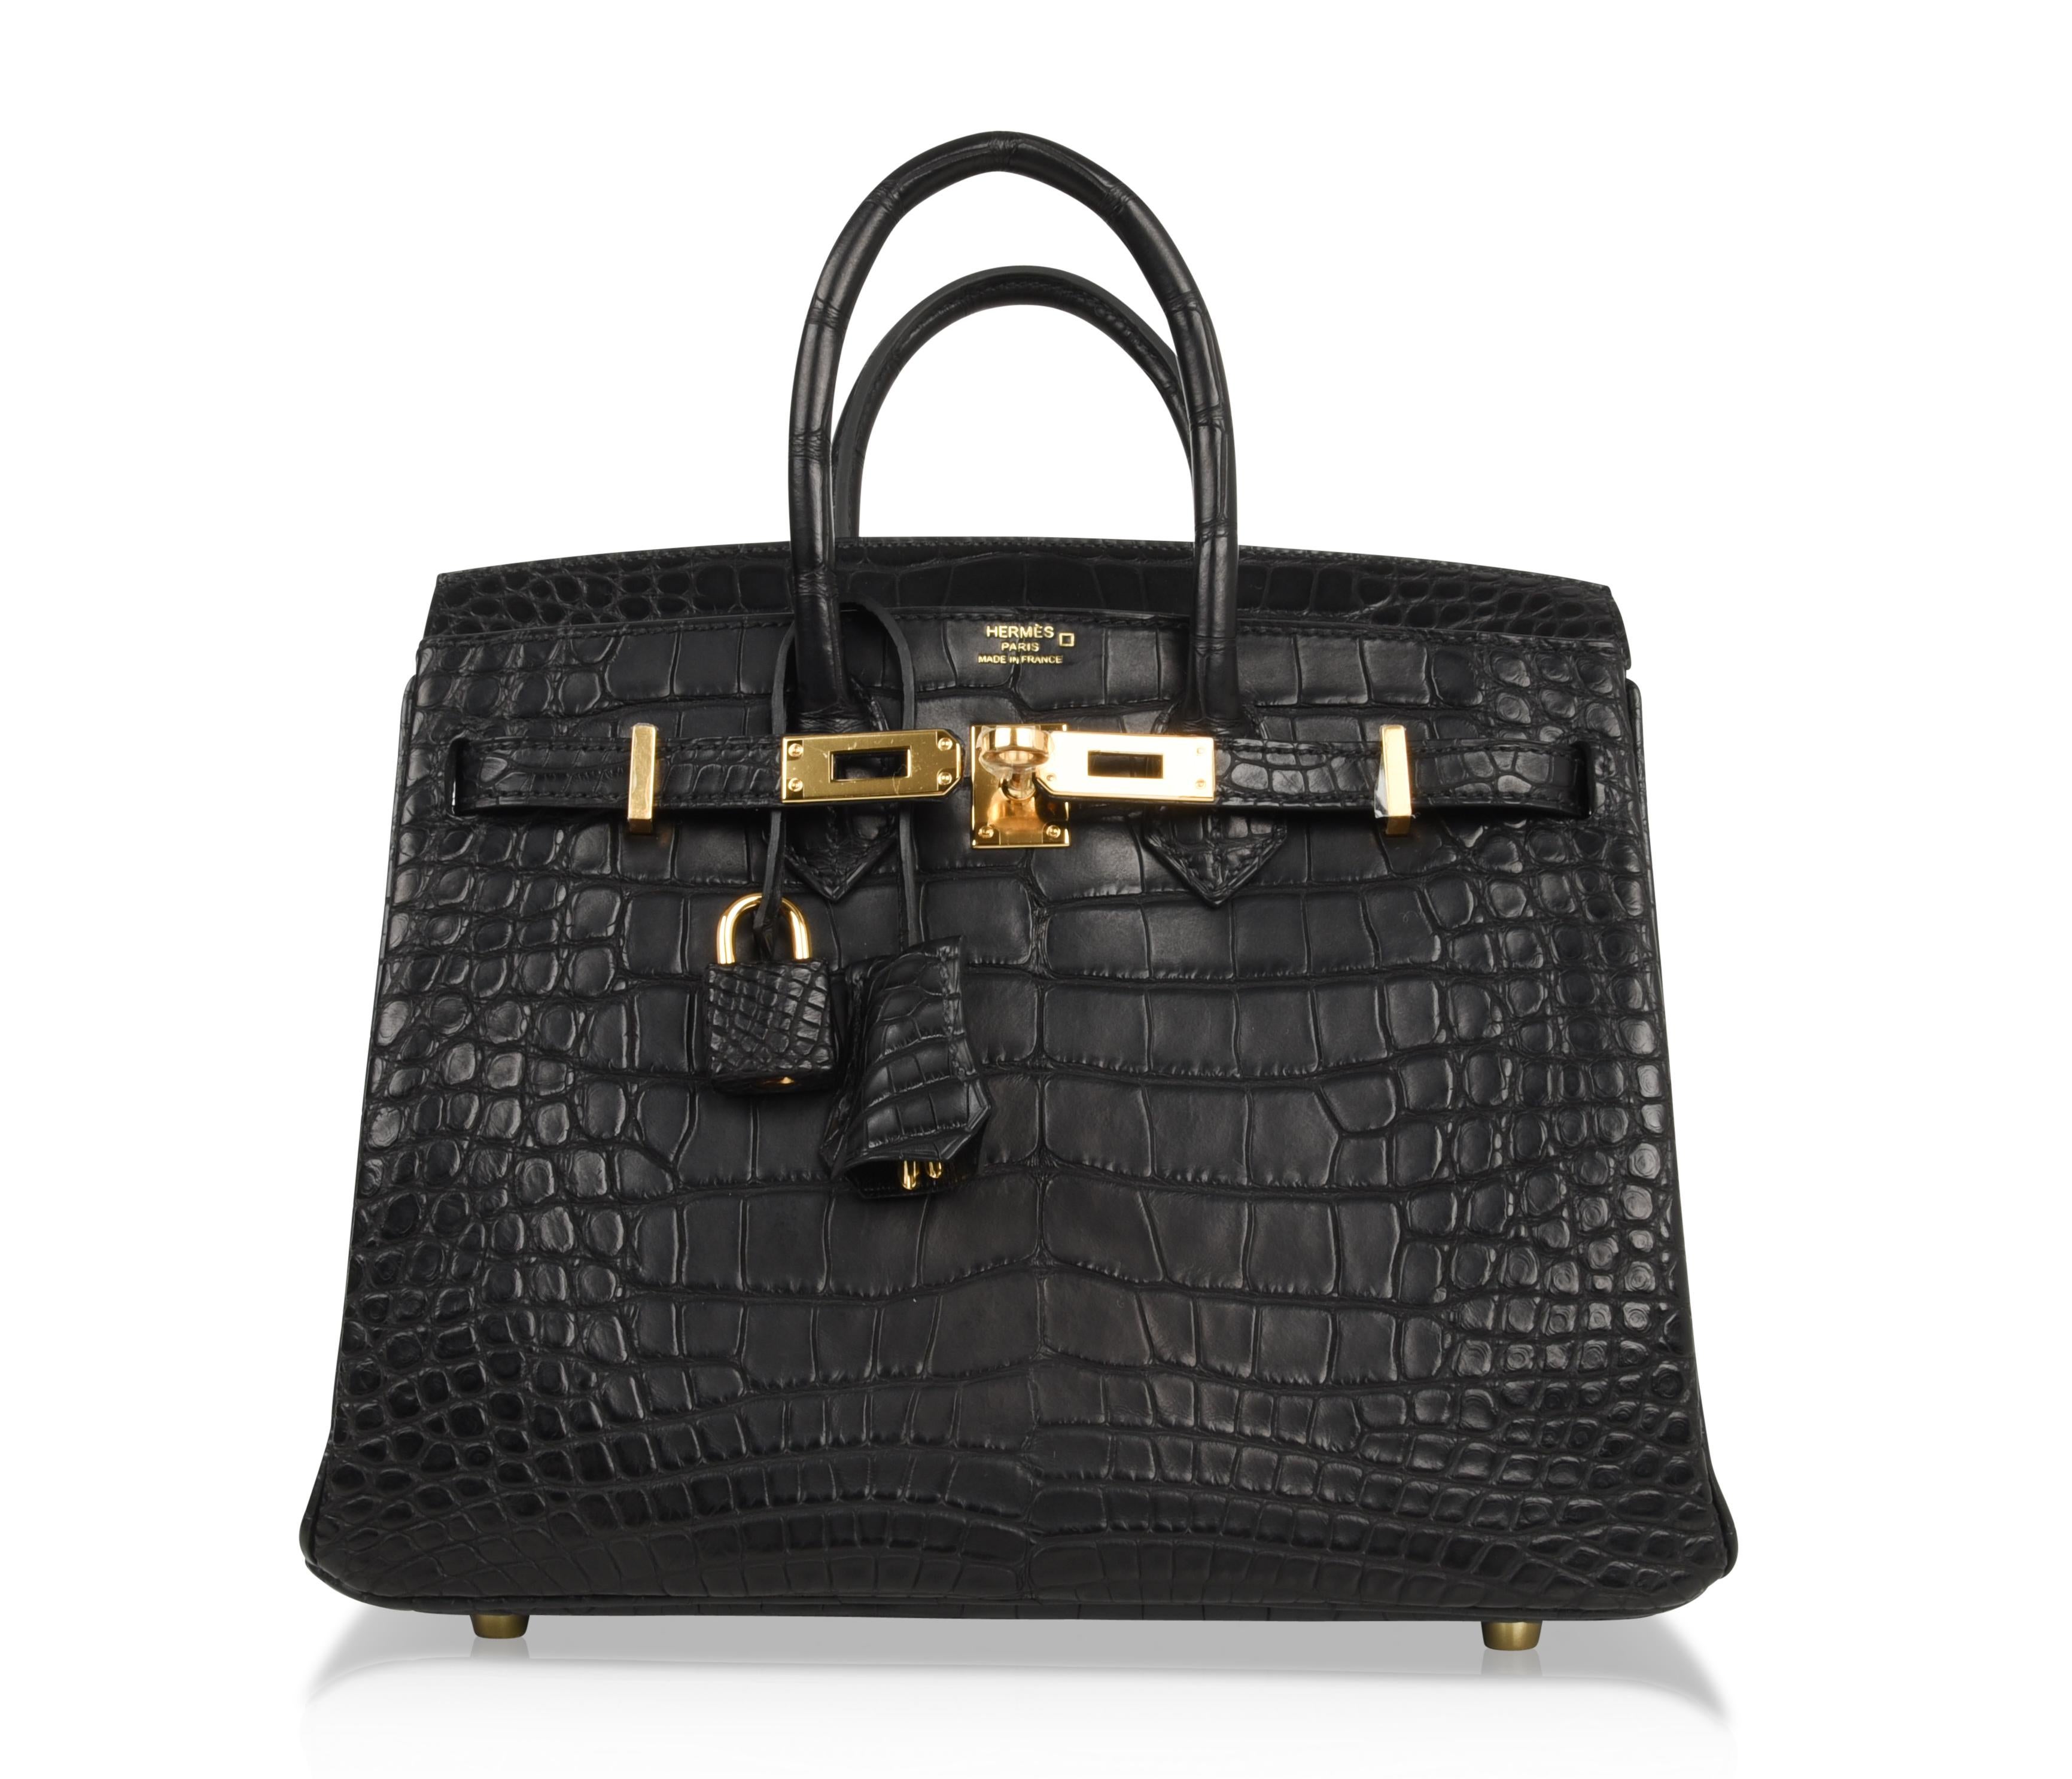 Hermès - Sac Birkin 25 noir mat en alligator avec accessoires dorés 3